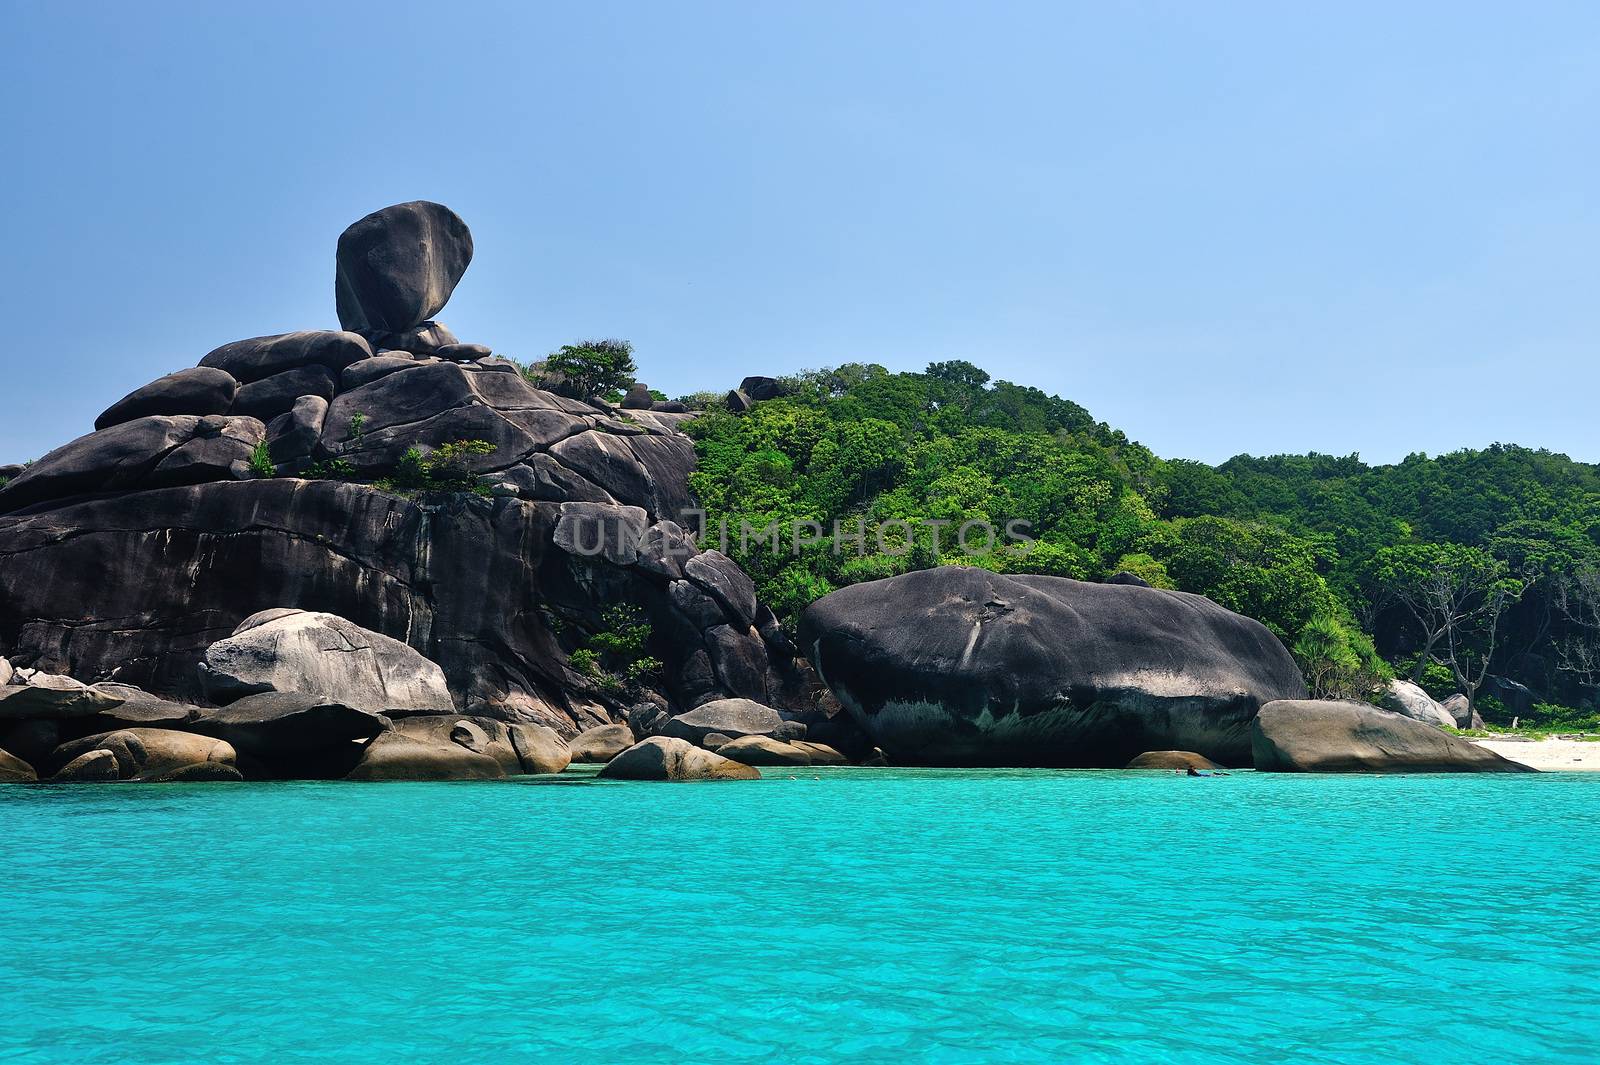 Tropical paradise, Similan islands, Andaman Sea, Thailand by think4photop